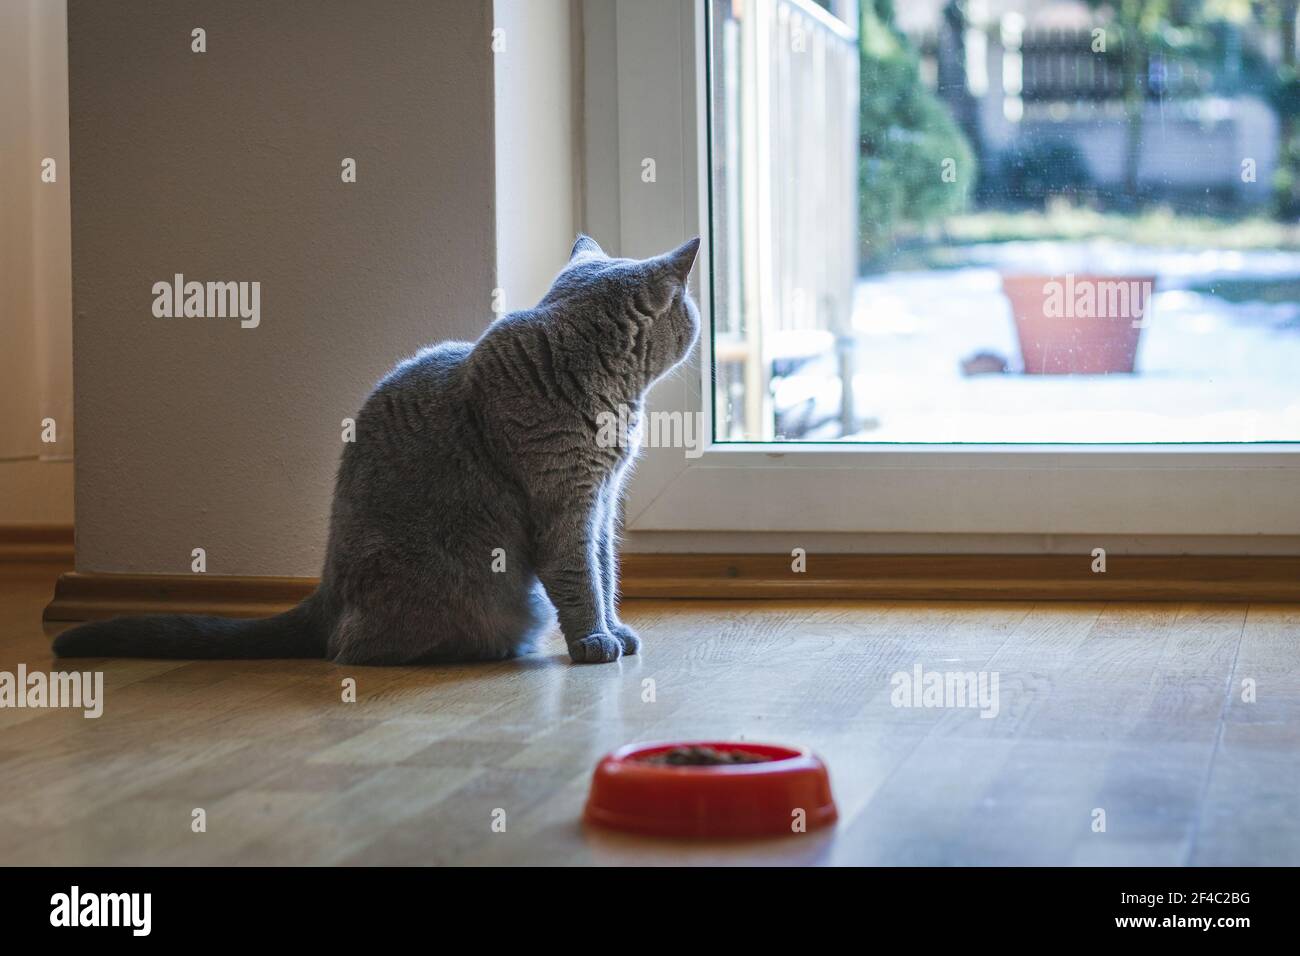 Carino gatto britannico shorthair grigio sta guardando attraverso la finestra. Gatto domestico in interno domestico. Foto Stock